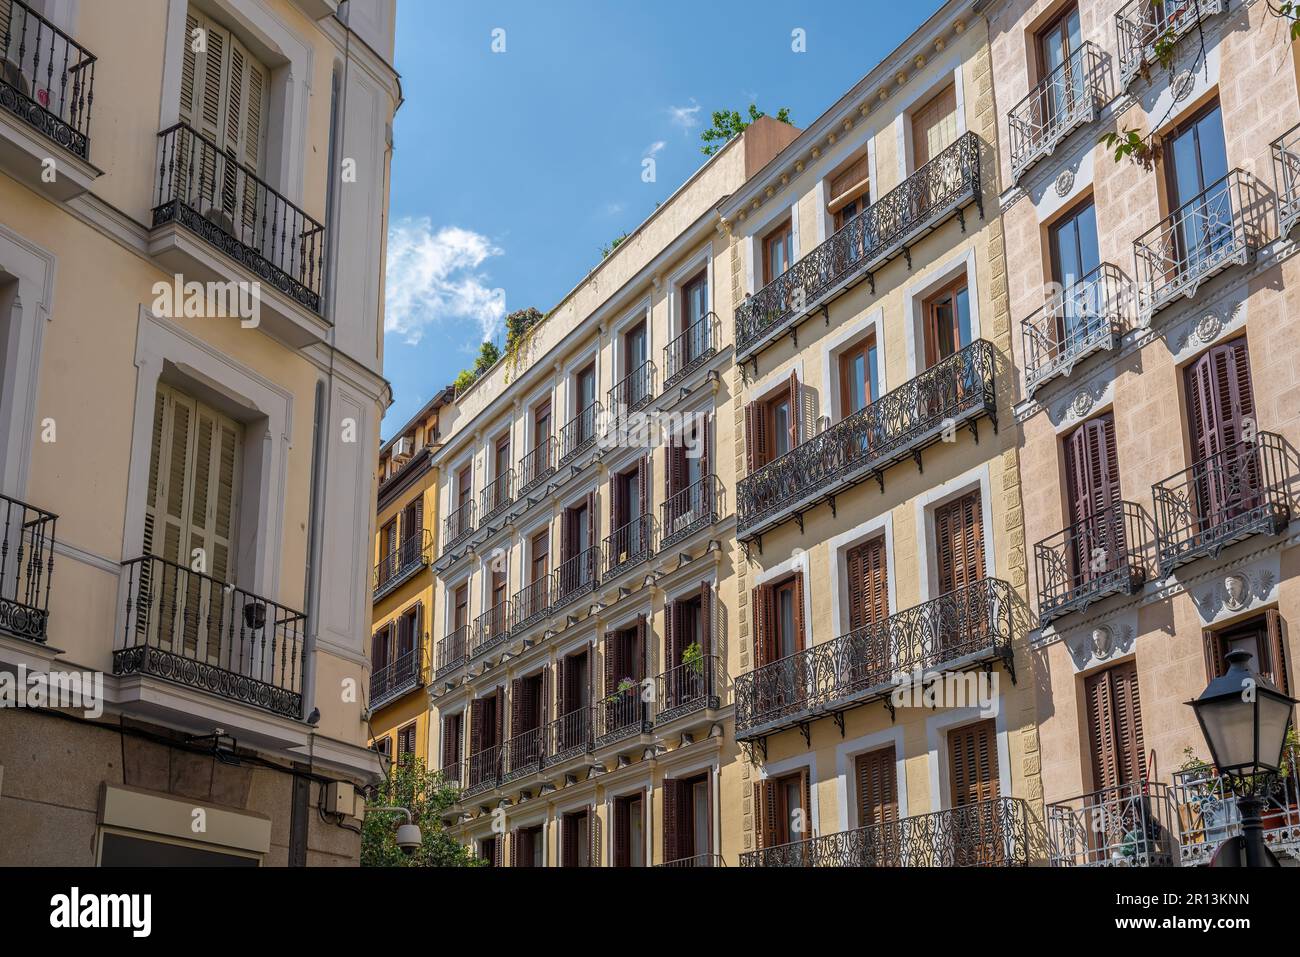 Traditionelle spanische Architektur - Gebäudefassaden mit Balkonen - Madrid, Spanien Stockfoto